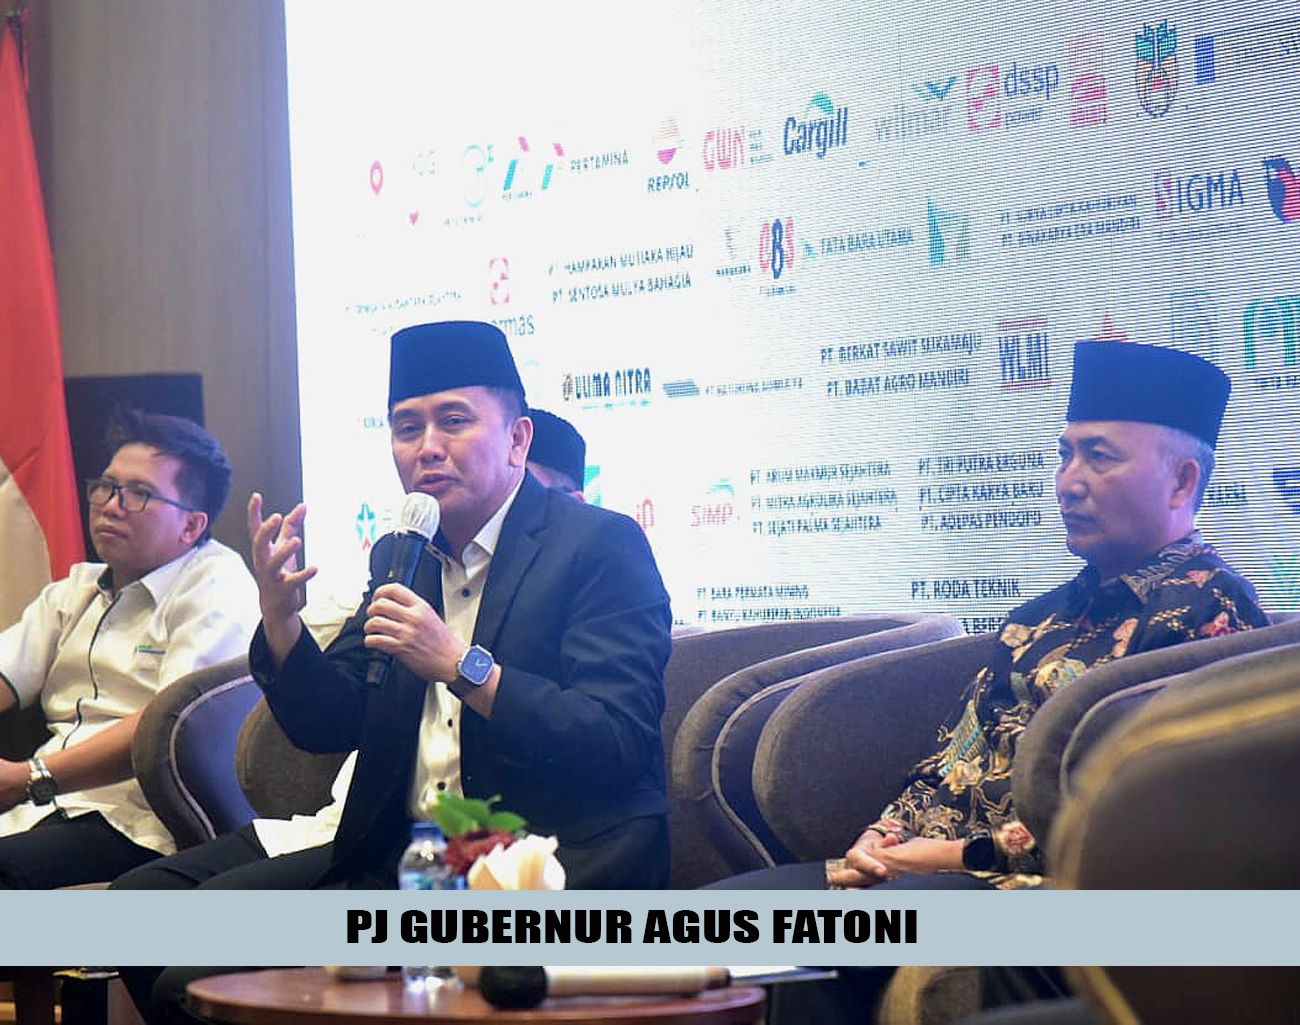 Pj Gubernur Agus Fatoni Harapkan Semua Pihak Terlibat Sukseskan Tujuh Gerakan Serentak Se-Sumsel